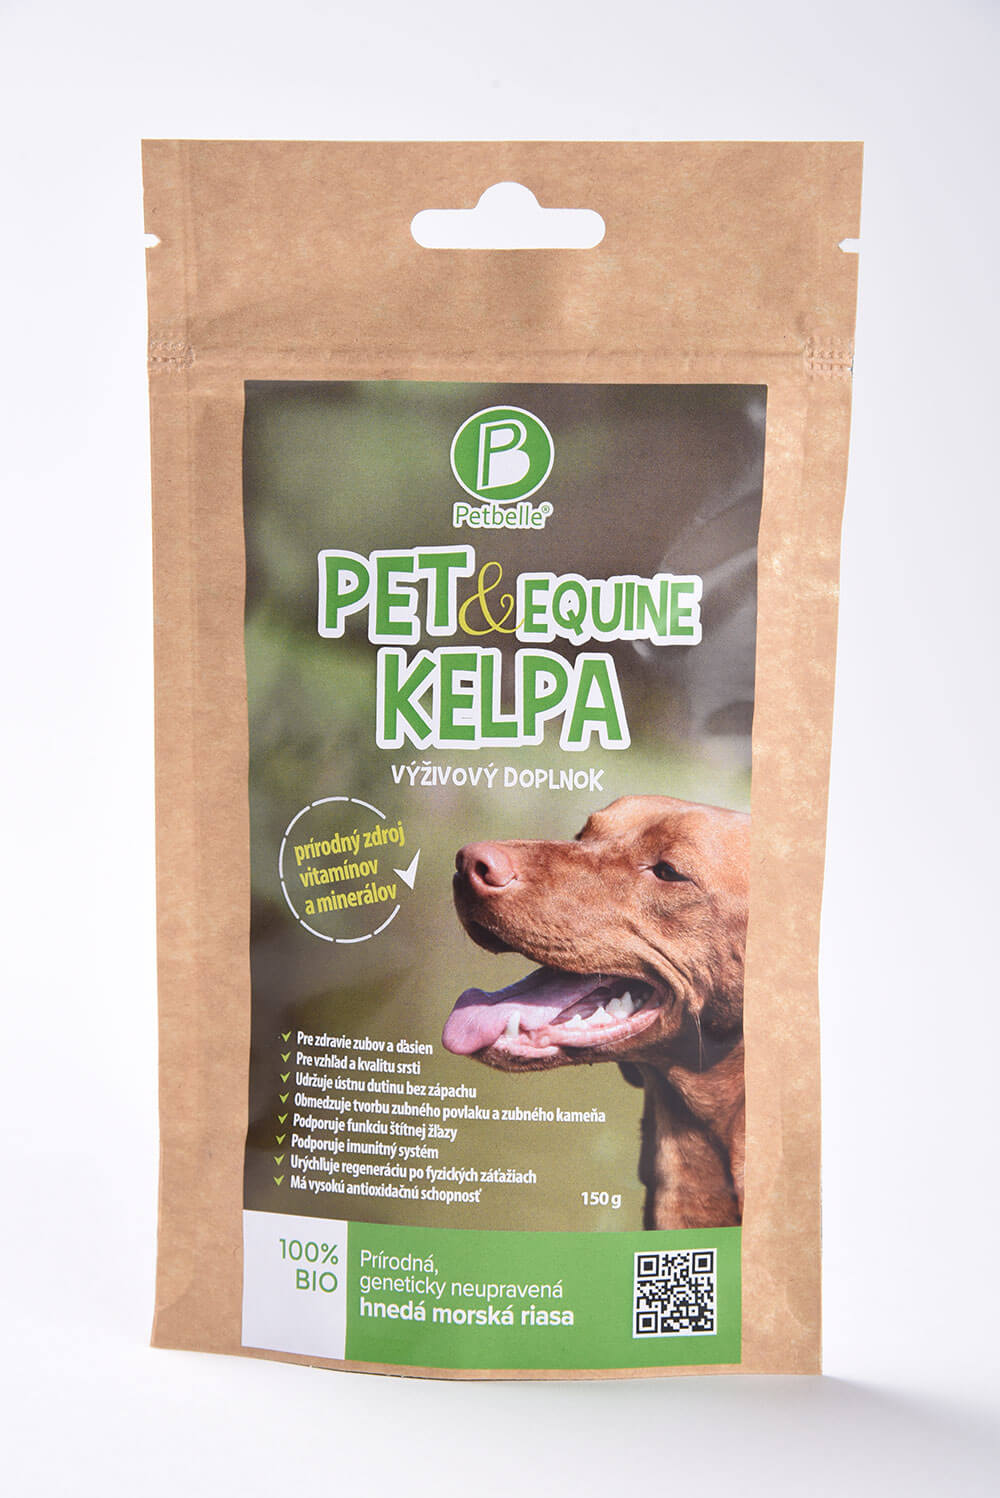 Doplnok výživy pre psa Petbelle Pet & Equine Kelpa - prírodný zdroj vitamínov a minerálov 150 g